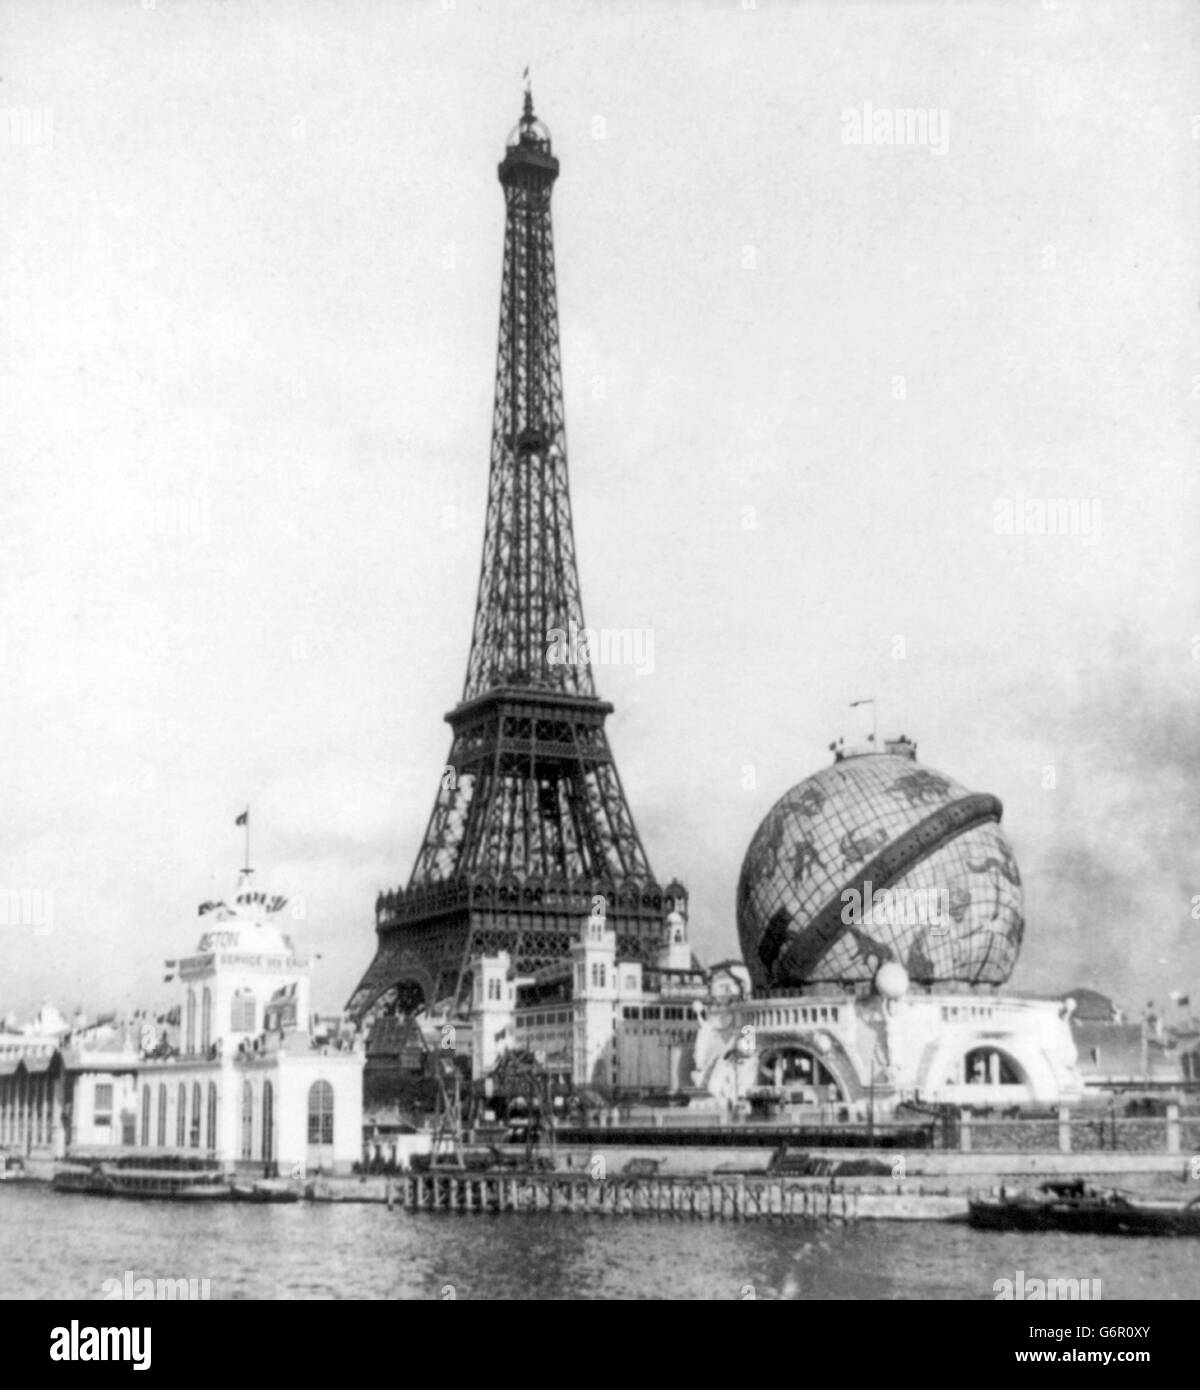 Exposition de Paris, 1900. La Tour Eiffel, de la Seine et globe de Passay Point, Exposition de Paris 1900, Paris, France. La Tour Eiffel a été construite pour servir de l'entrée de l'Exposition Universelle de 1889. Banque D'Images